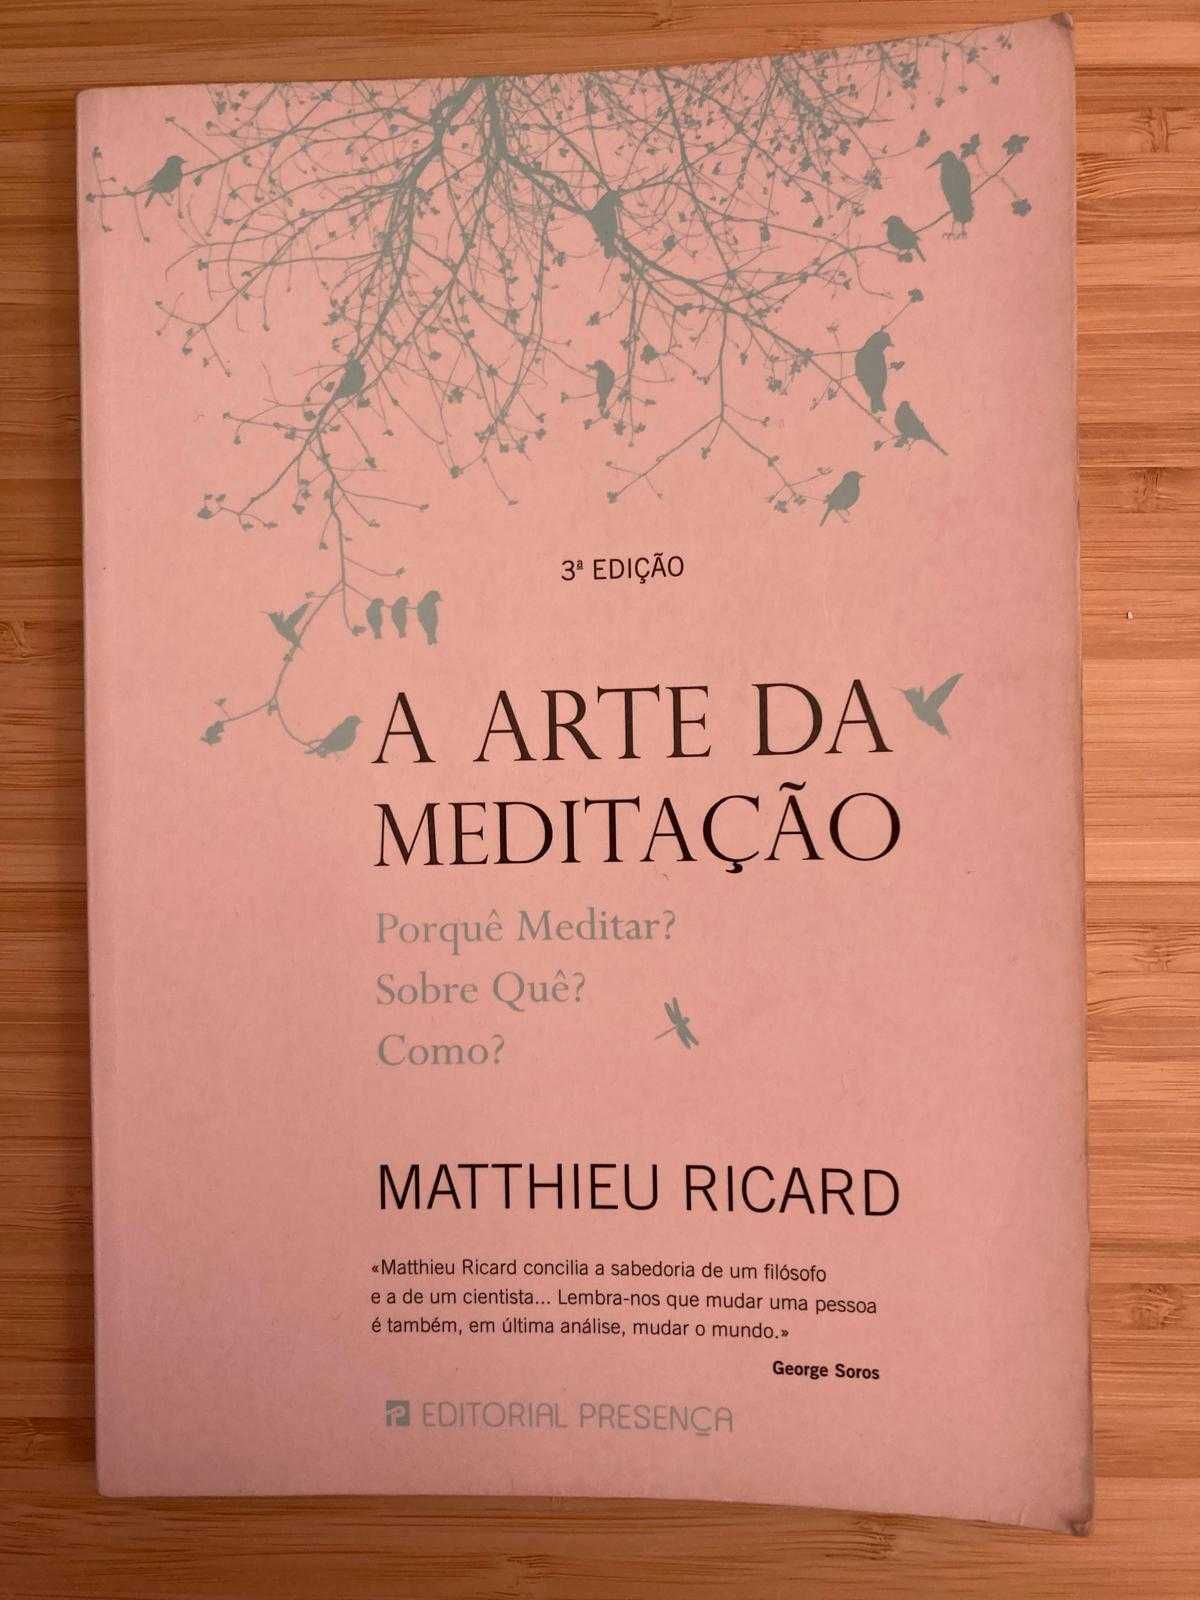 Livro "A arte da meditação" - 9€